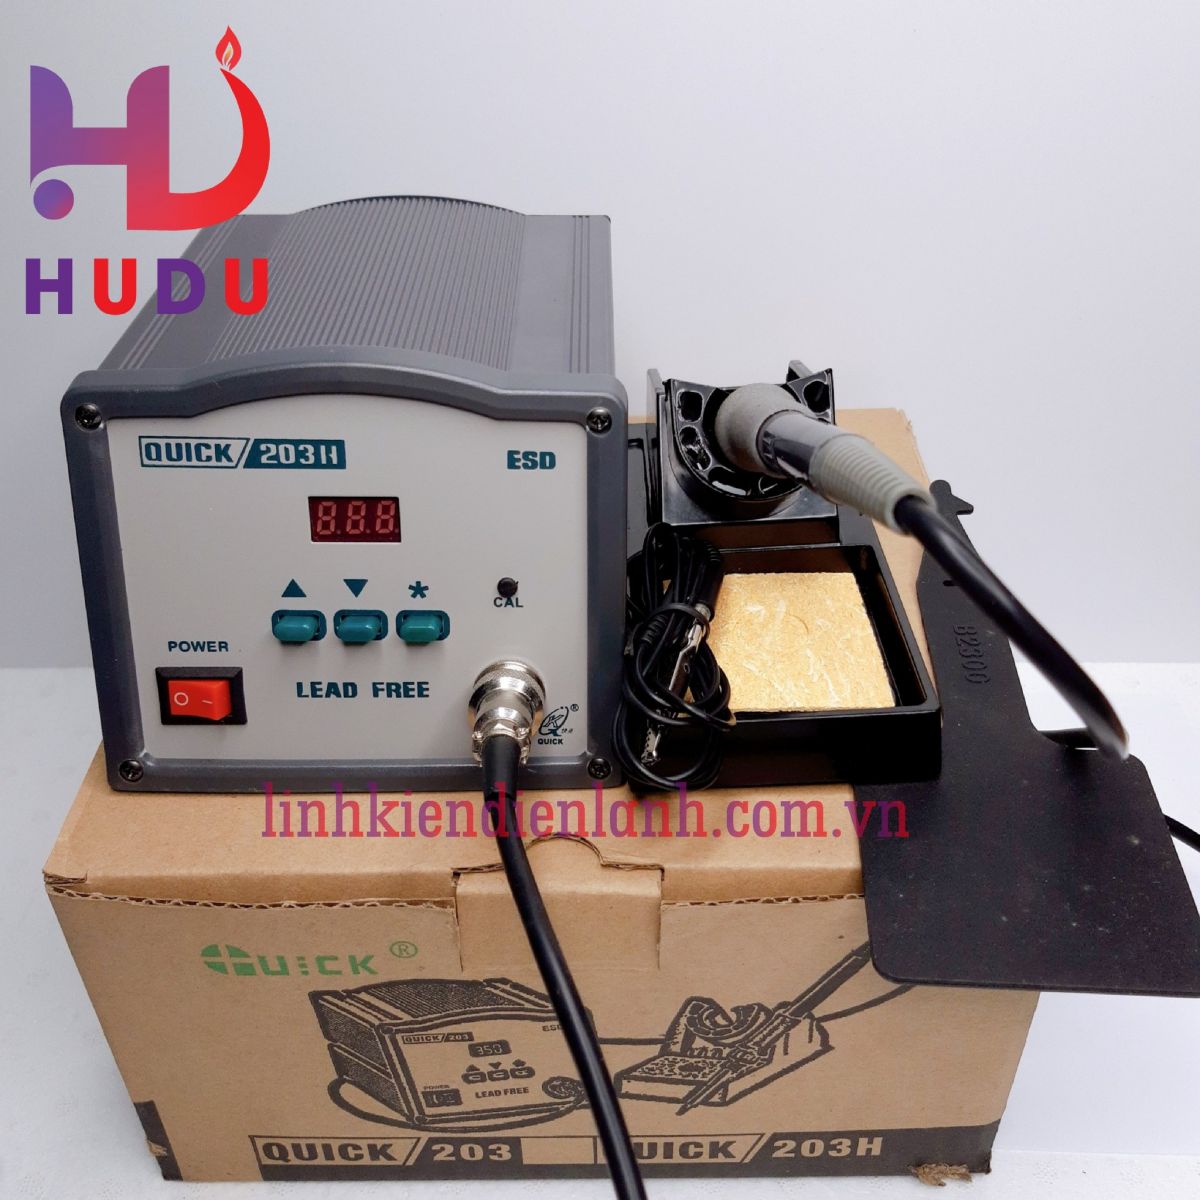 Linh kiện điện tử Hudu cung cấp trạm hàn Quick 203H chính hãng đảm bảo chất lượng tốt